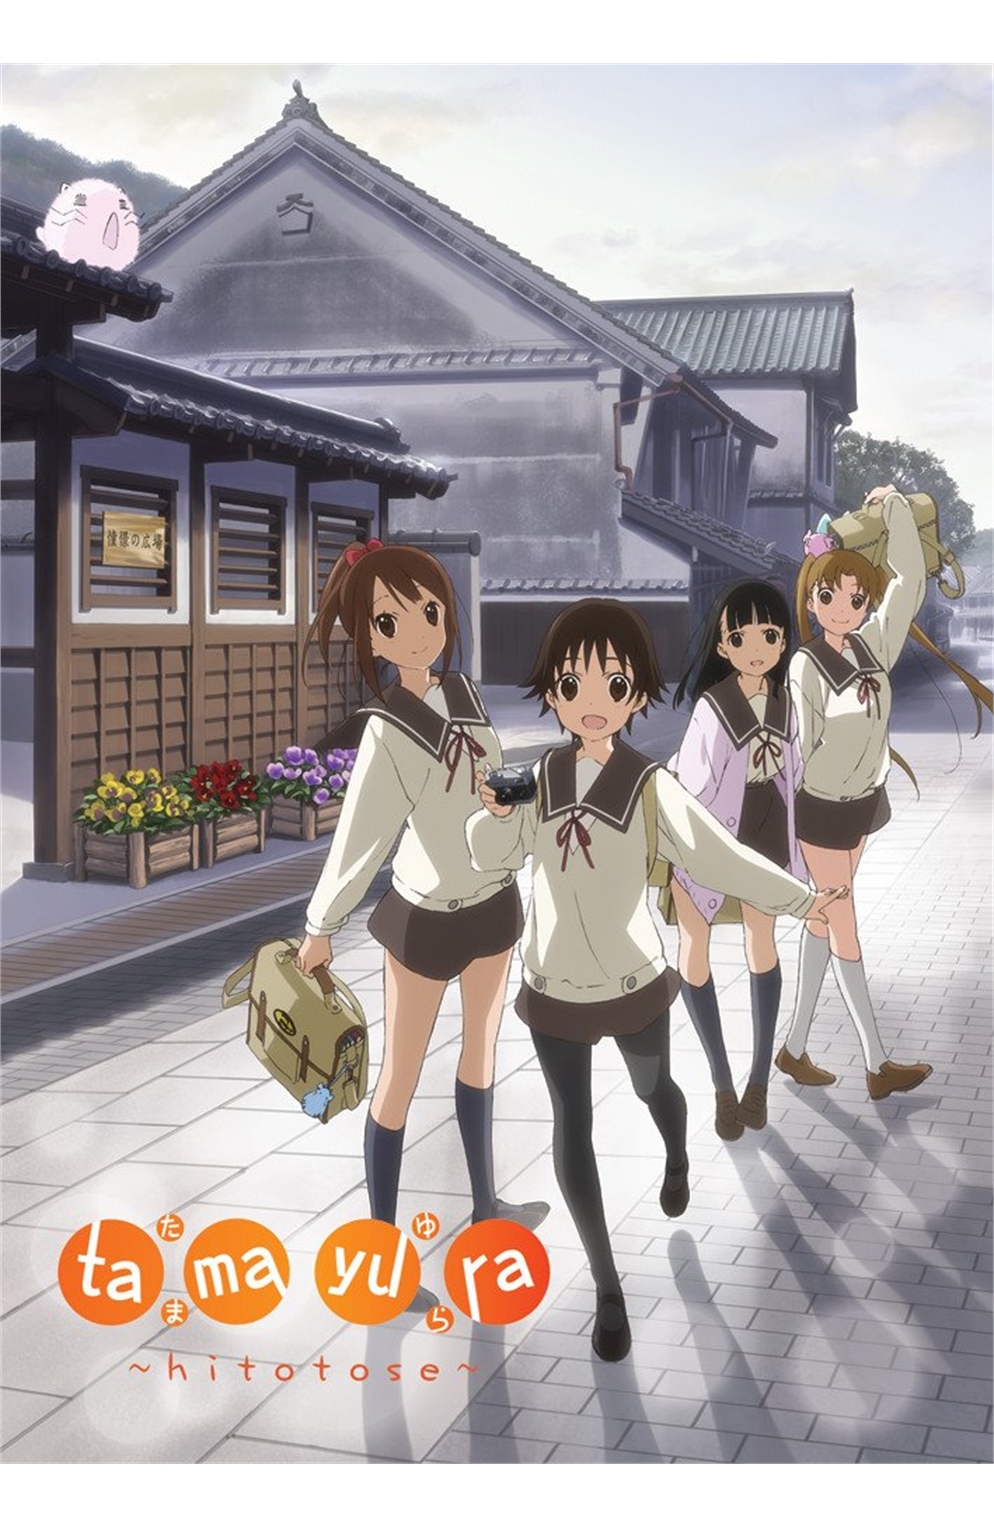 Tamayura Hitotose Episode 1-12 DVD